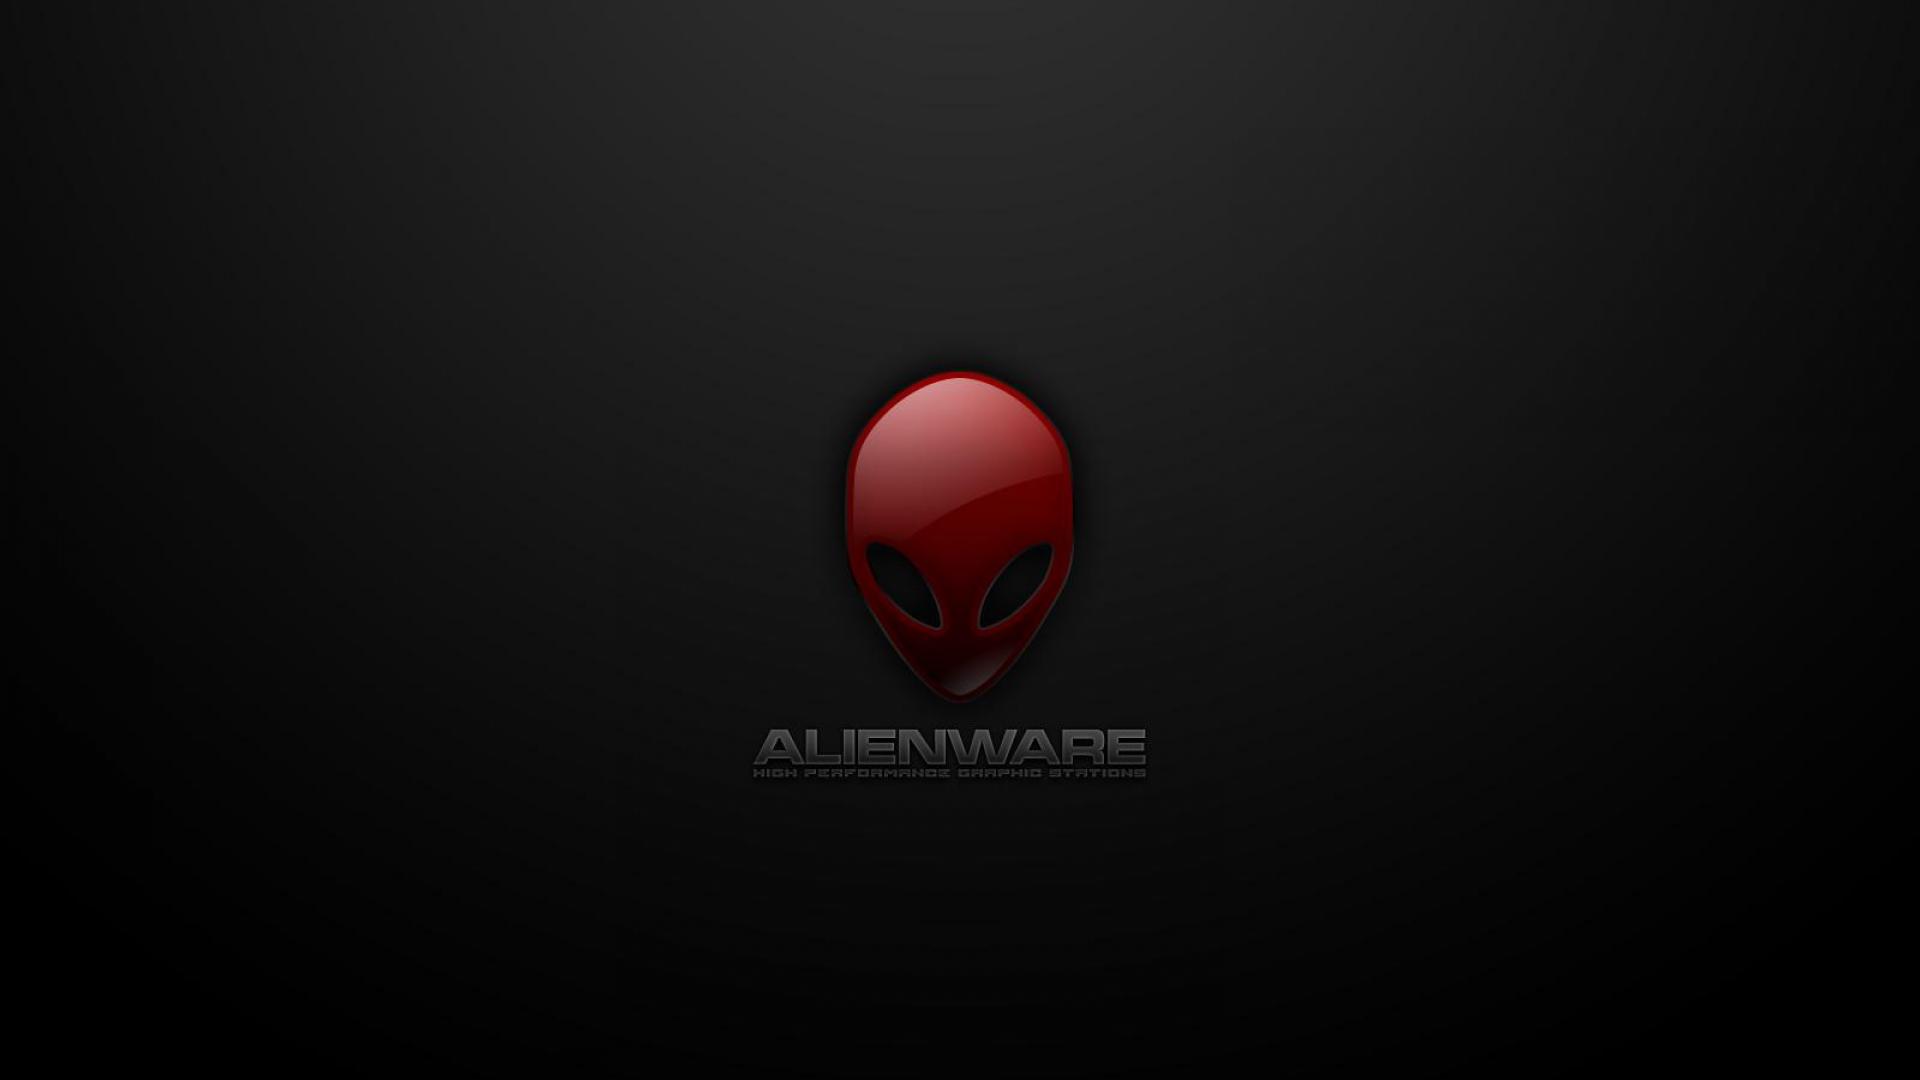 alienware wallpaper - (#80414) - HQ Desktop Wallpapers ...